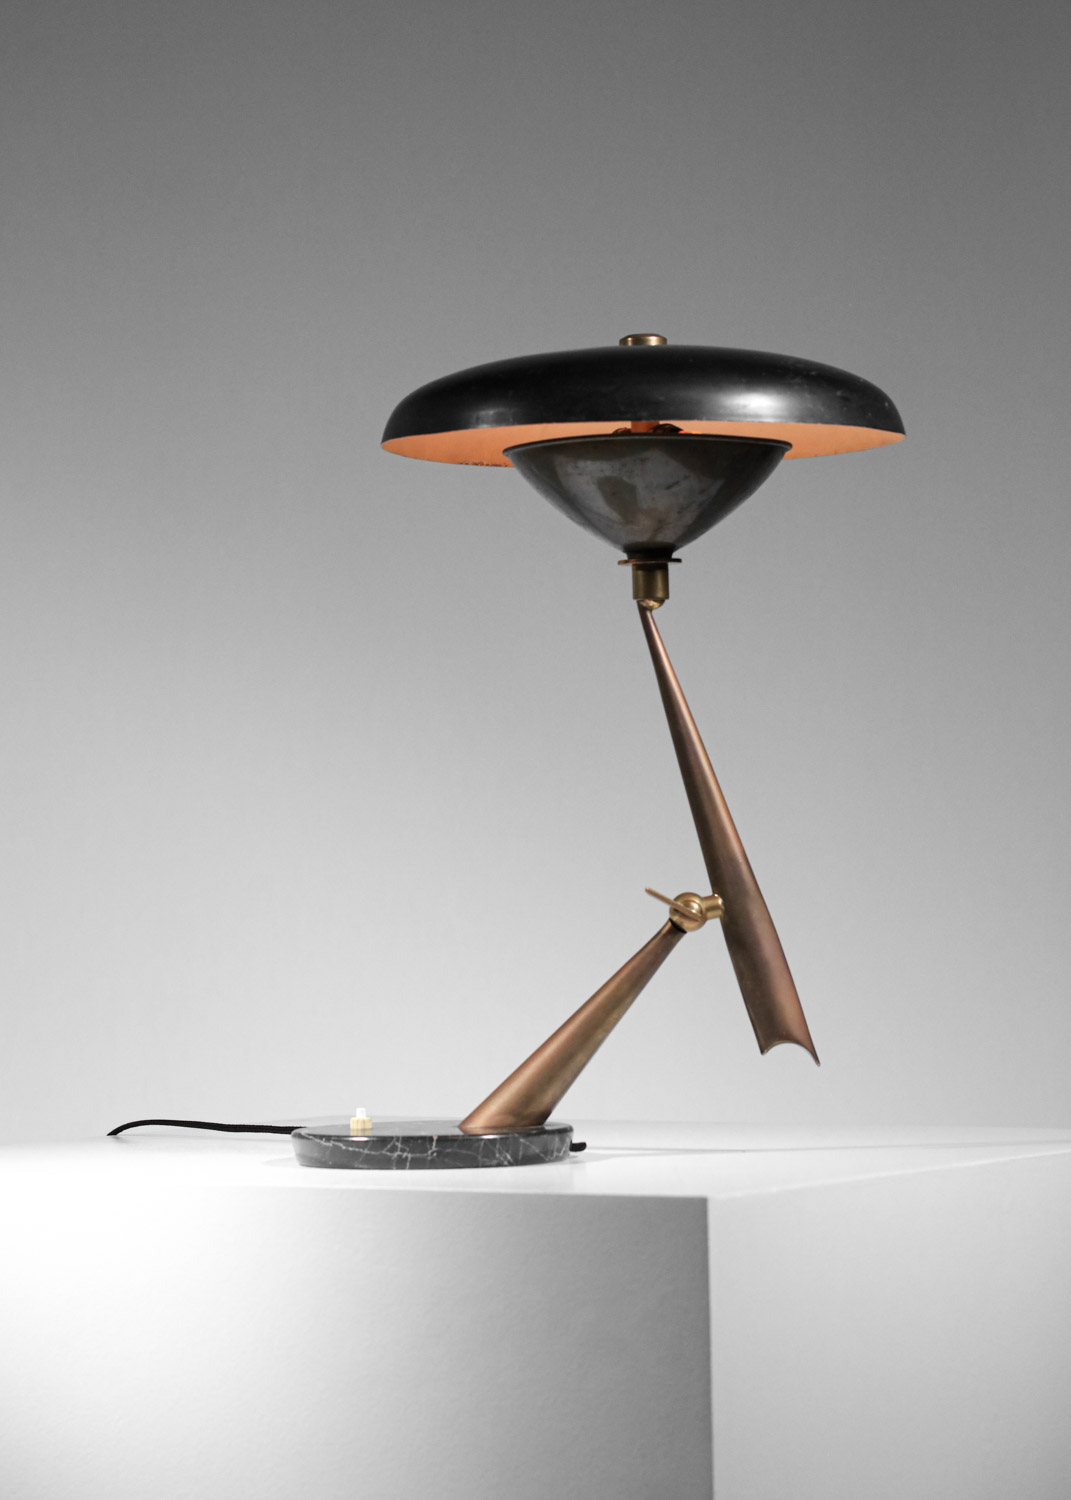 Lampe de table italienne années 50 attr. à Lumen laquée noire et laiton socle en marbre Années 60 style arredoluce stillux H130